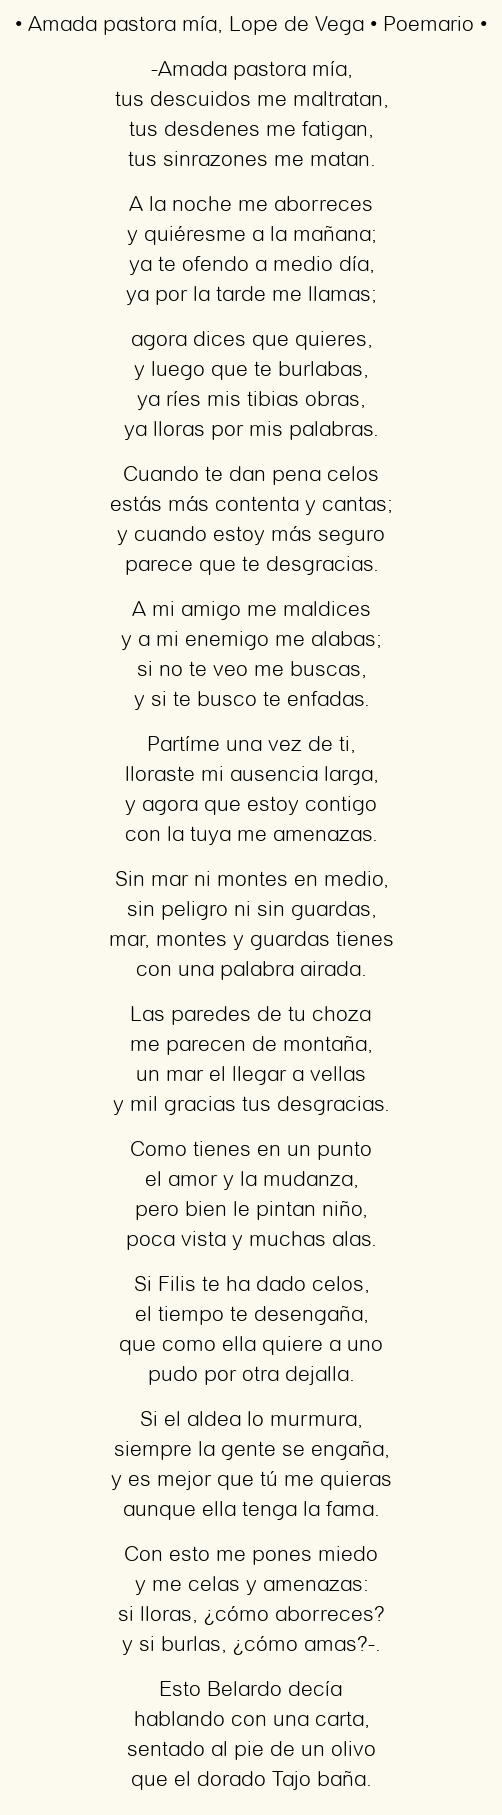 Imagen con el poema Amada pastora mía, por Lope de Vega